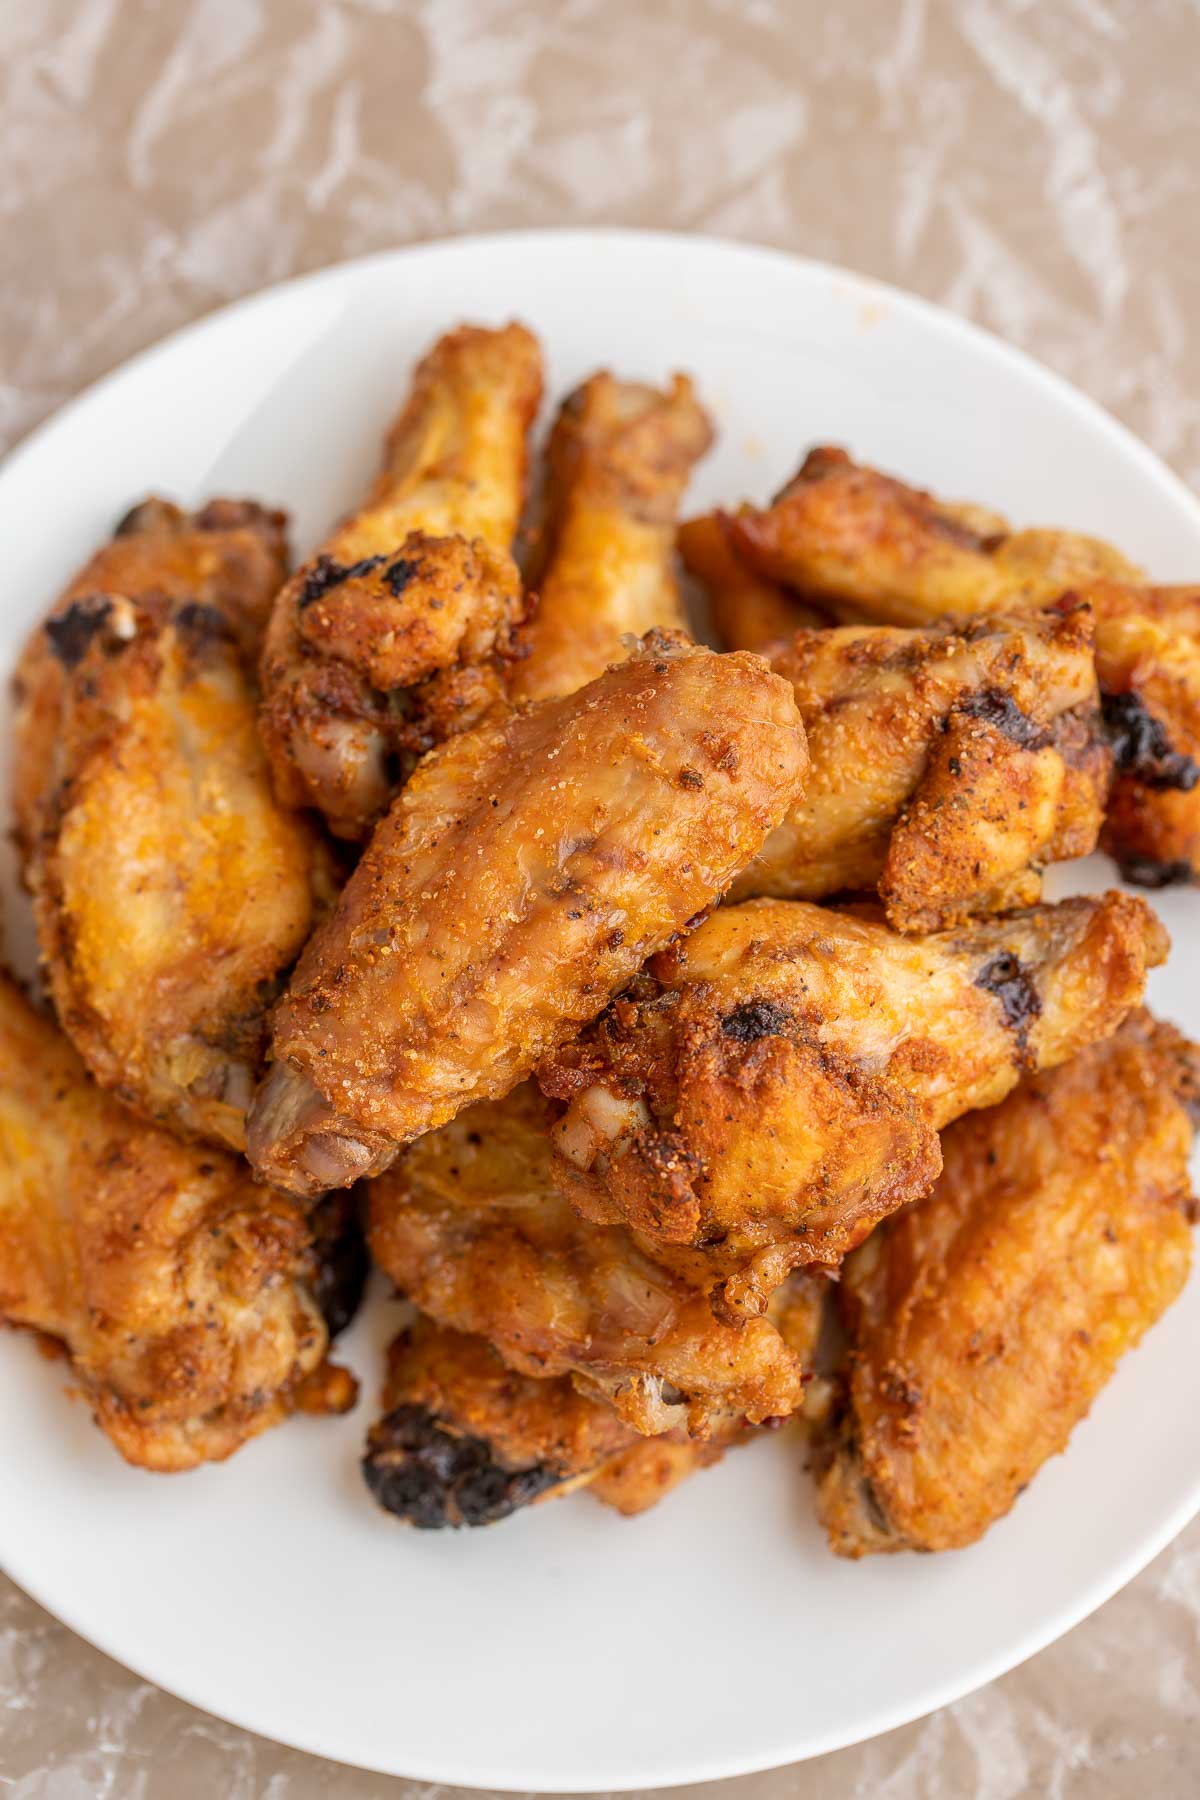 Crispy Baked Chicken Wings Recipe - Let the Baking Begin!